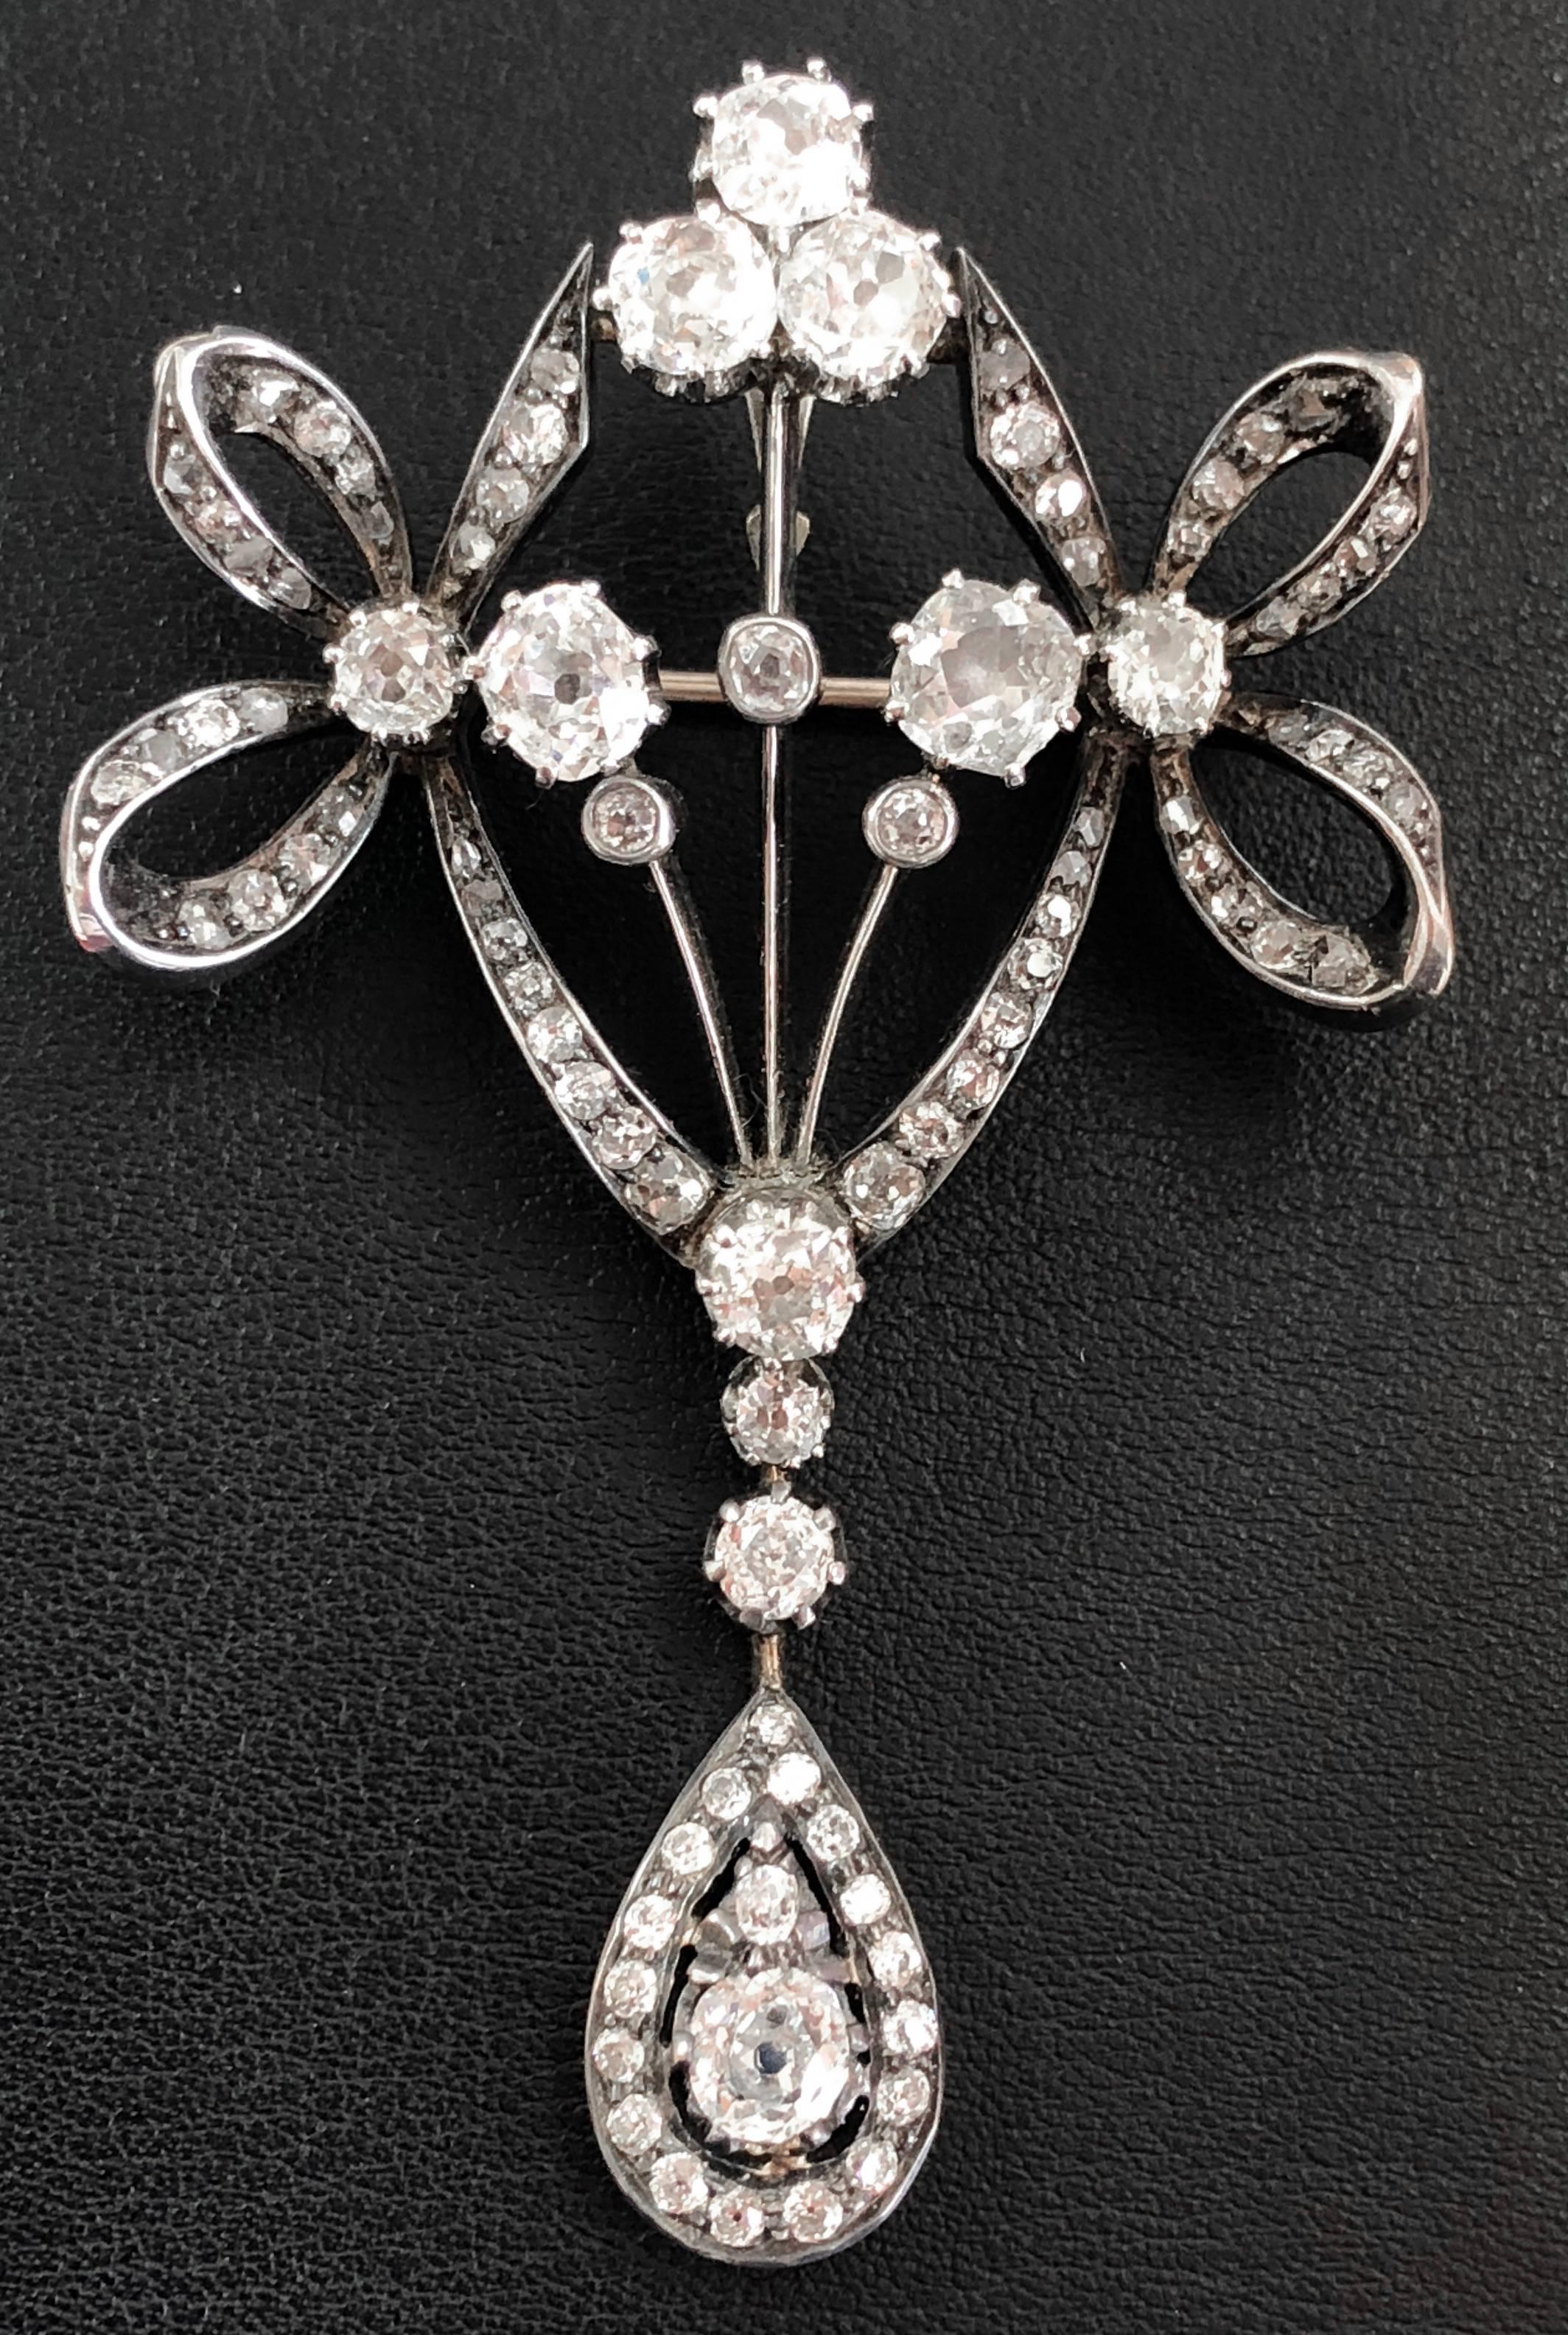 Eine bogenförmige Diamant-Brosche/-Anhänger aus der viktorianischen Ära, ca. 1880er Jahre. Er ist mit alten europäischen Diamanten und Diamanten im Kissenschliff besetzt, die etwa 5 Karat wiegen.